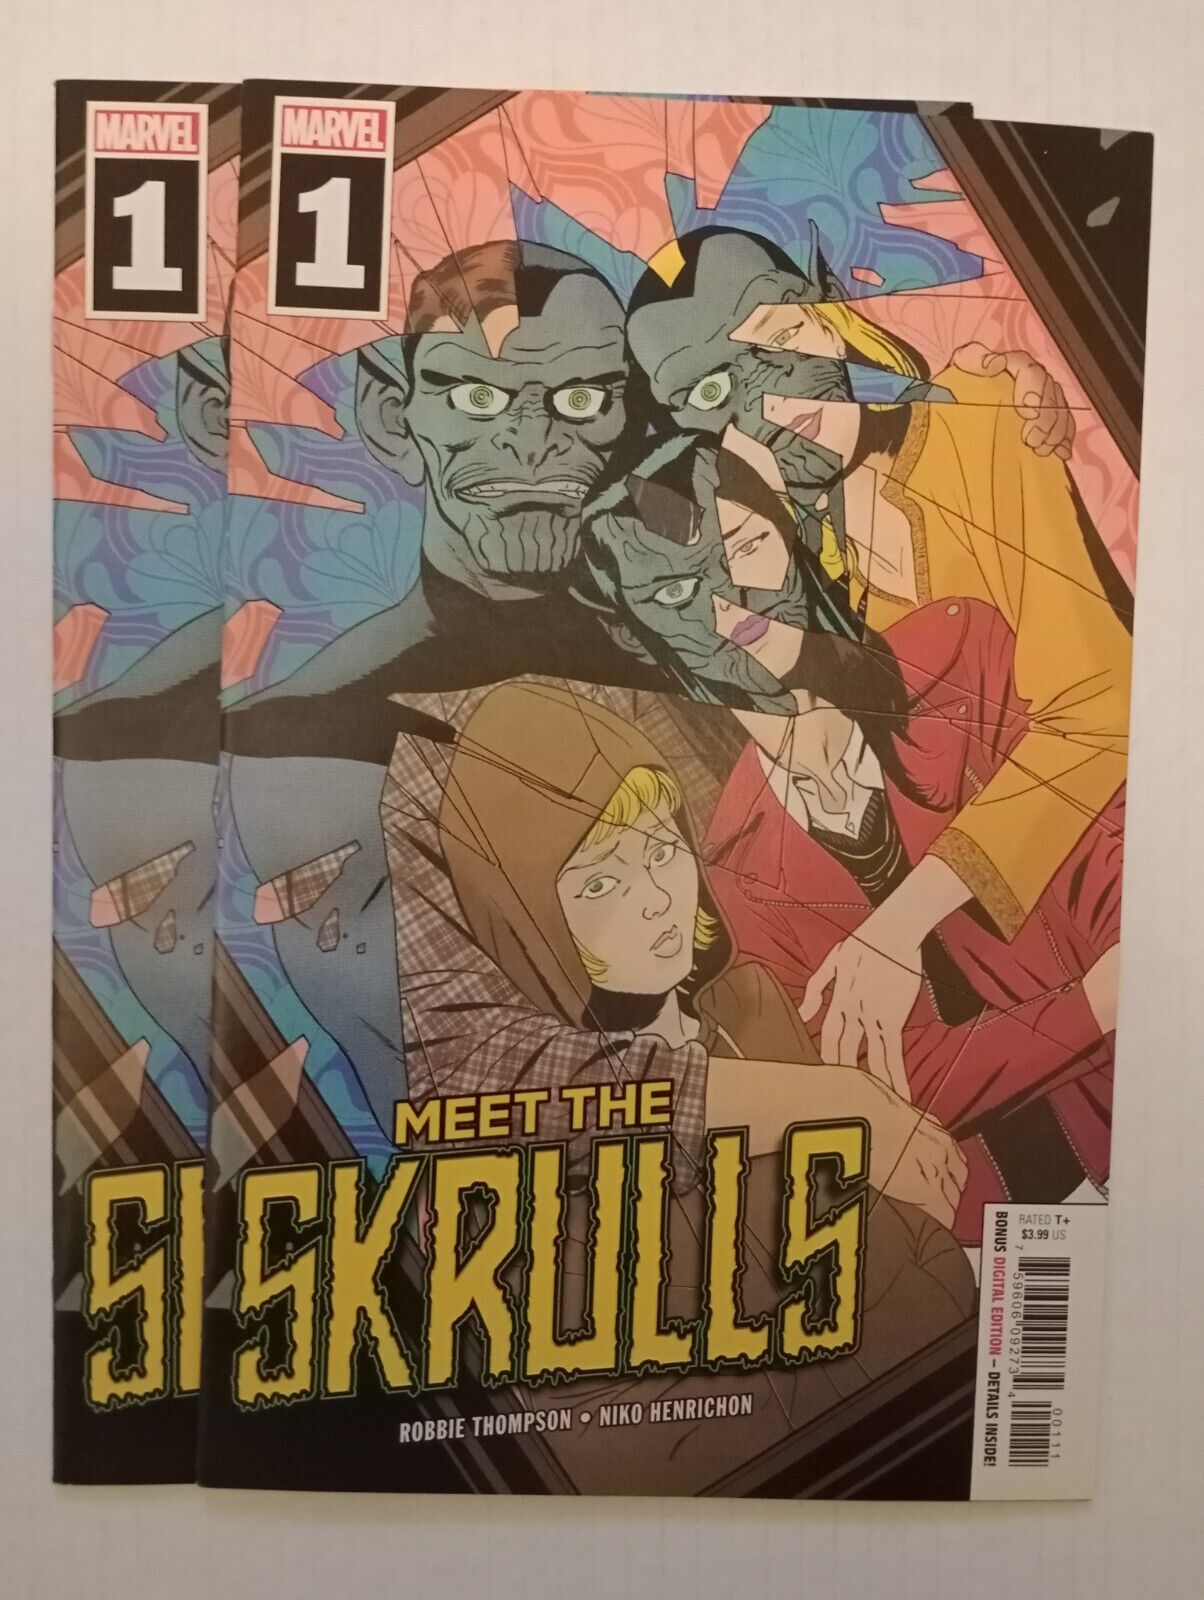 Meet The Skrulls #1 2019 Marvel Comics. 2 High Grade Copies.